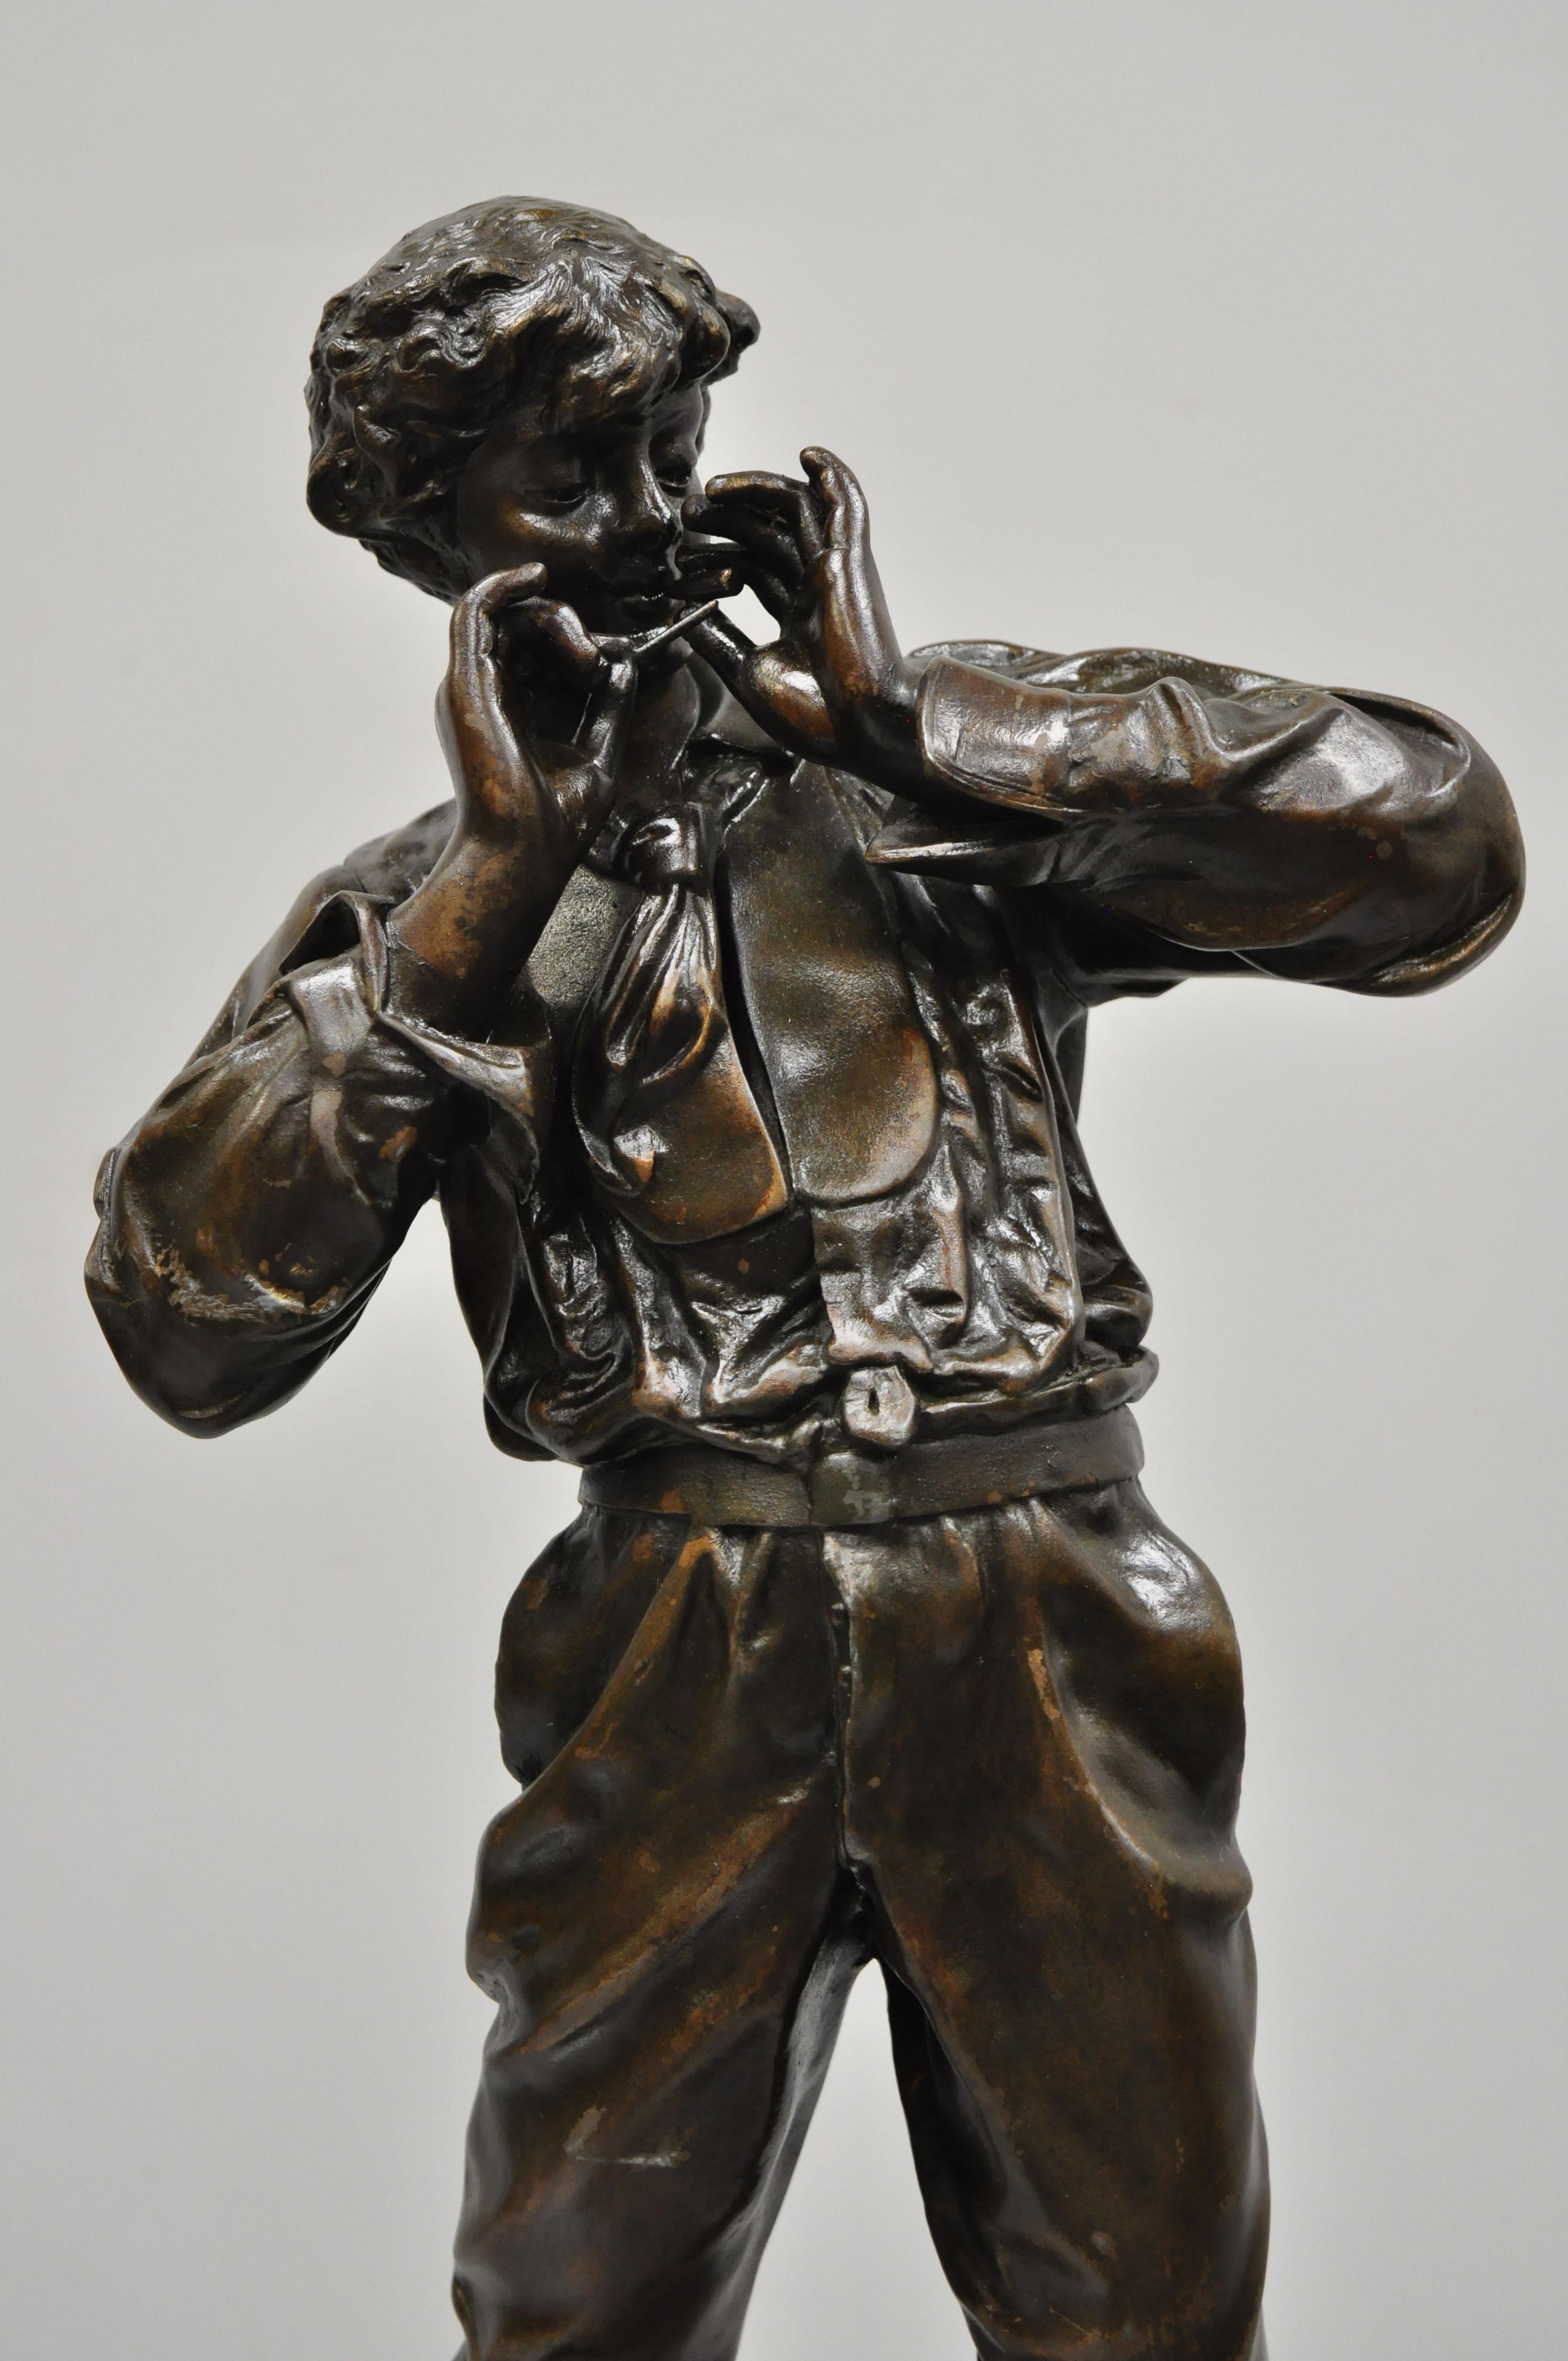 Le Fumeur Statue en terre cuite représentant un jeune homme en train de fumer, réalisée par Charles Masse. L'objet comporte une plaque en laiton portant la mention 